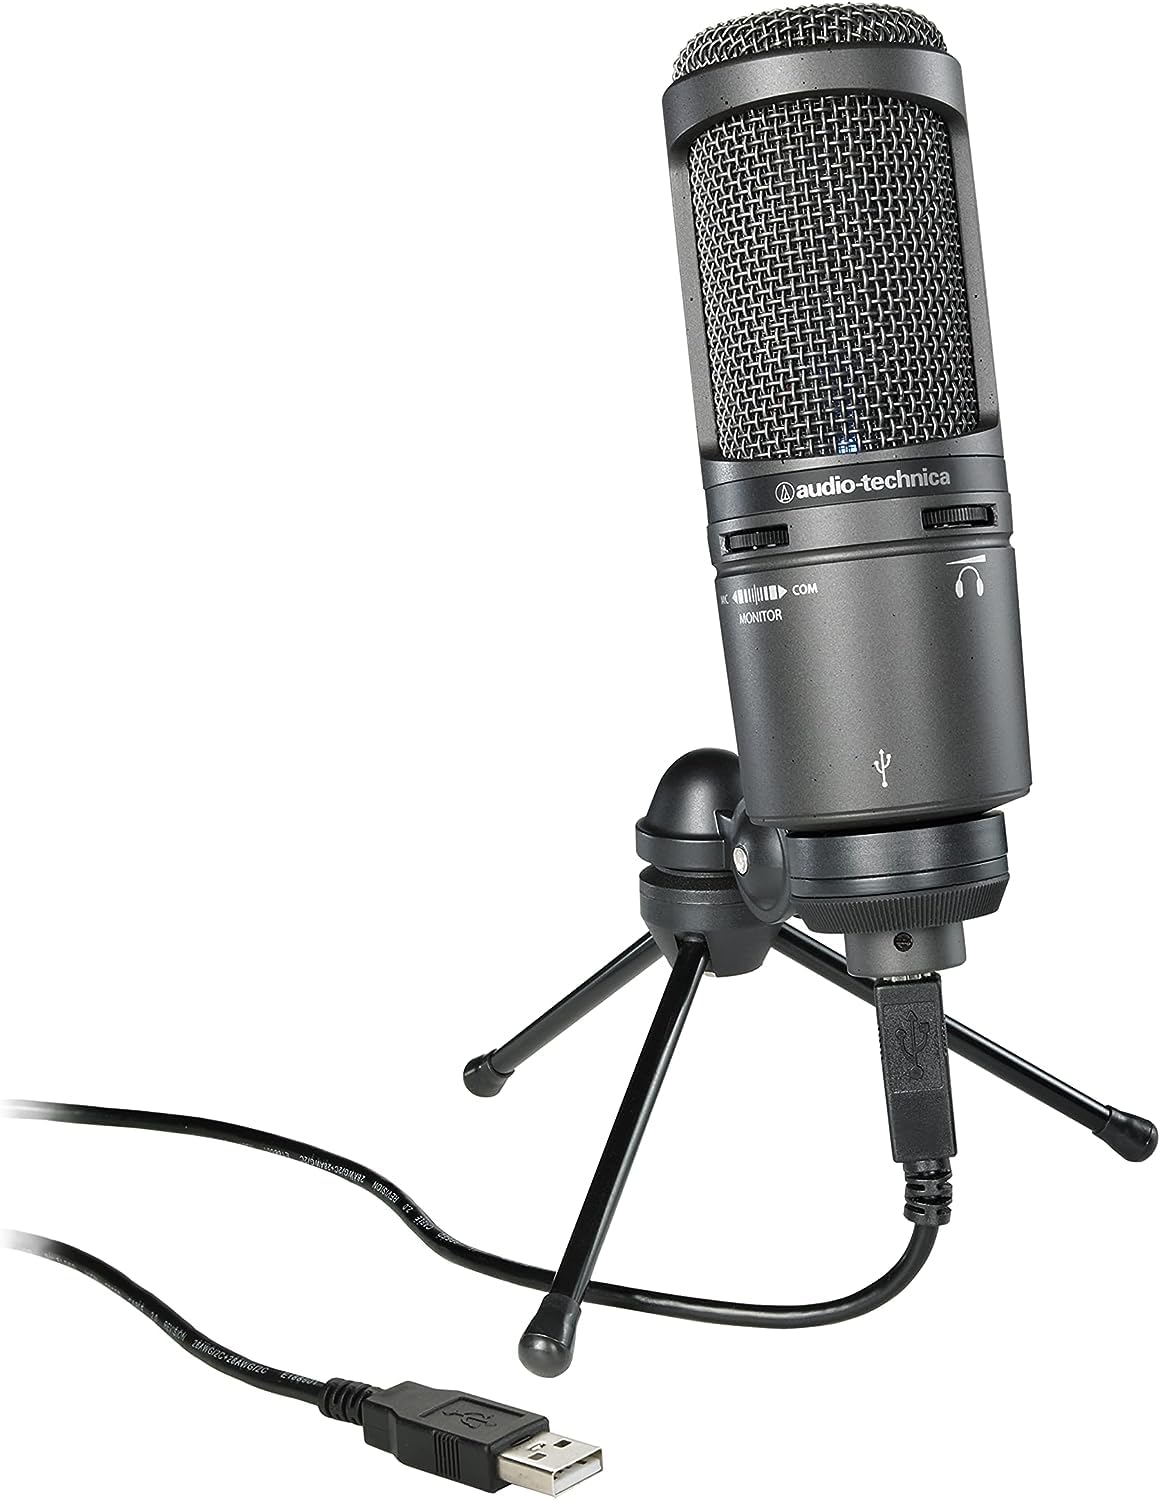 Audio-Technica AT2020USB+ Kondensatormikrofon mit Nierencharakteristik (USB Anschluss) für Voiceover, Podcasting, Gesang oder instrumentale Live-Aufnahmen